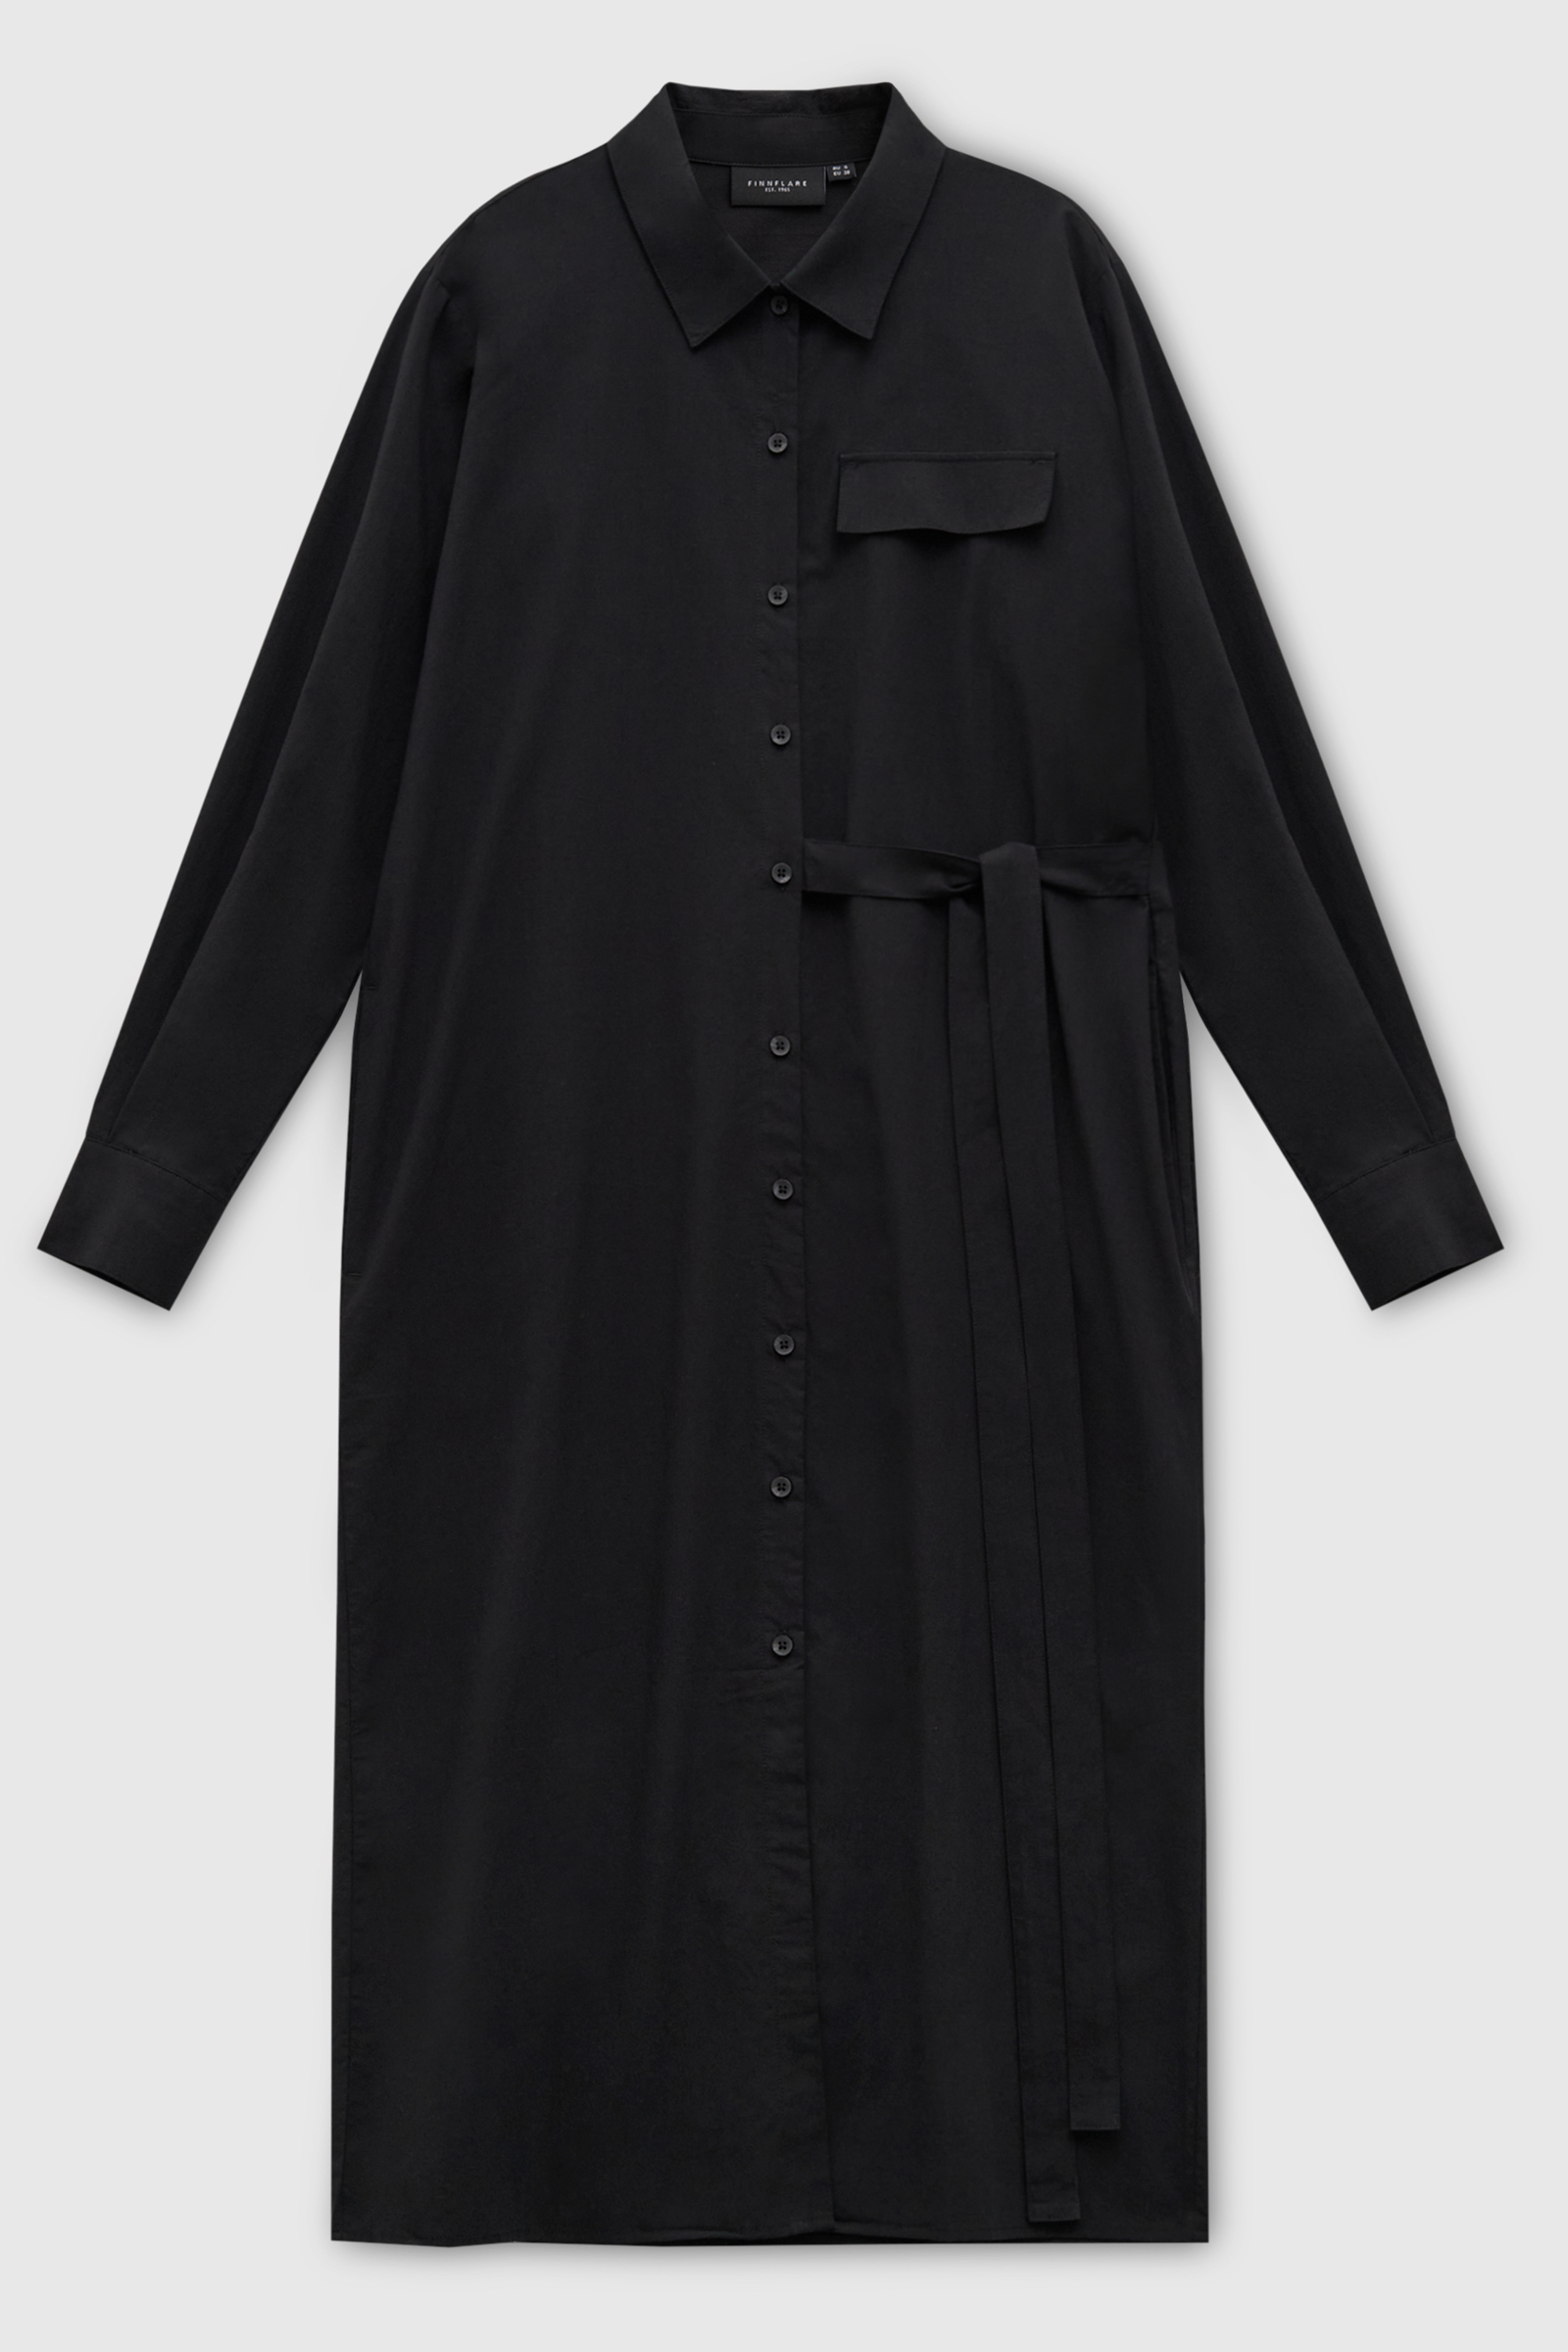 Платье женское Finn Flare FAD110165 черное M